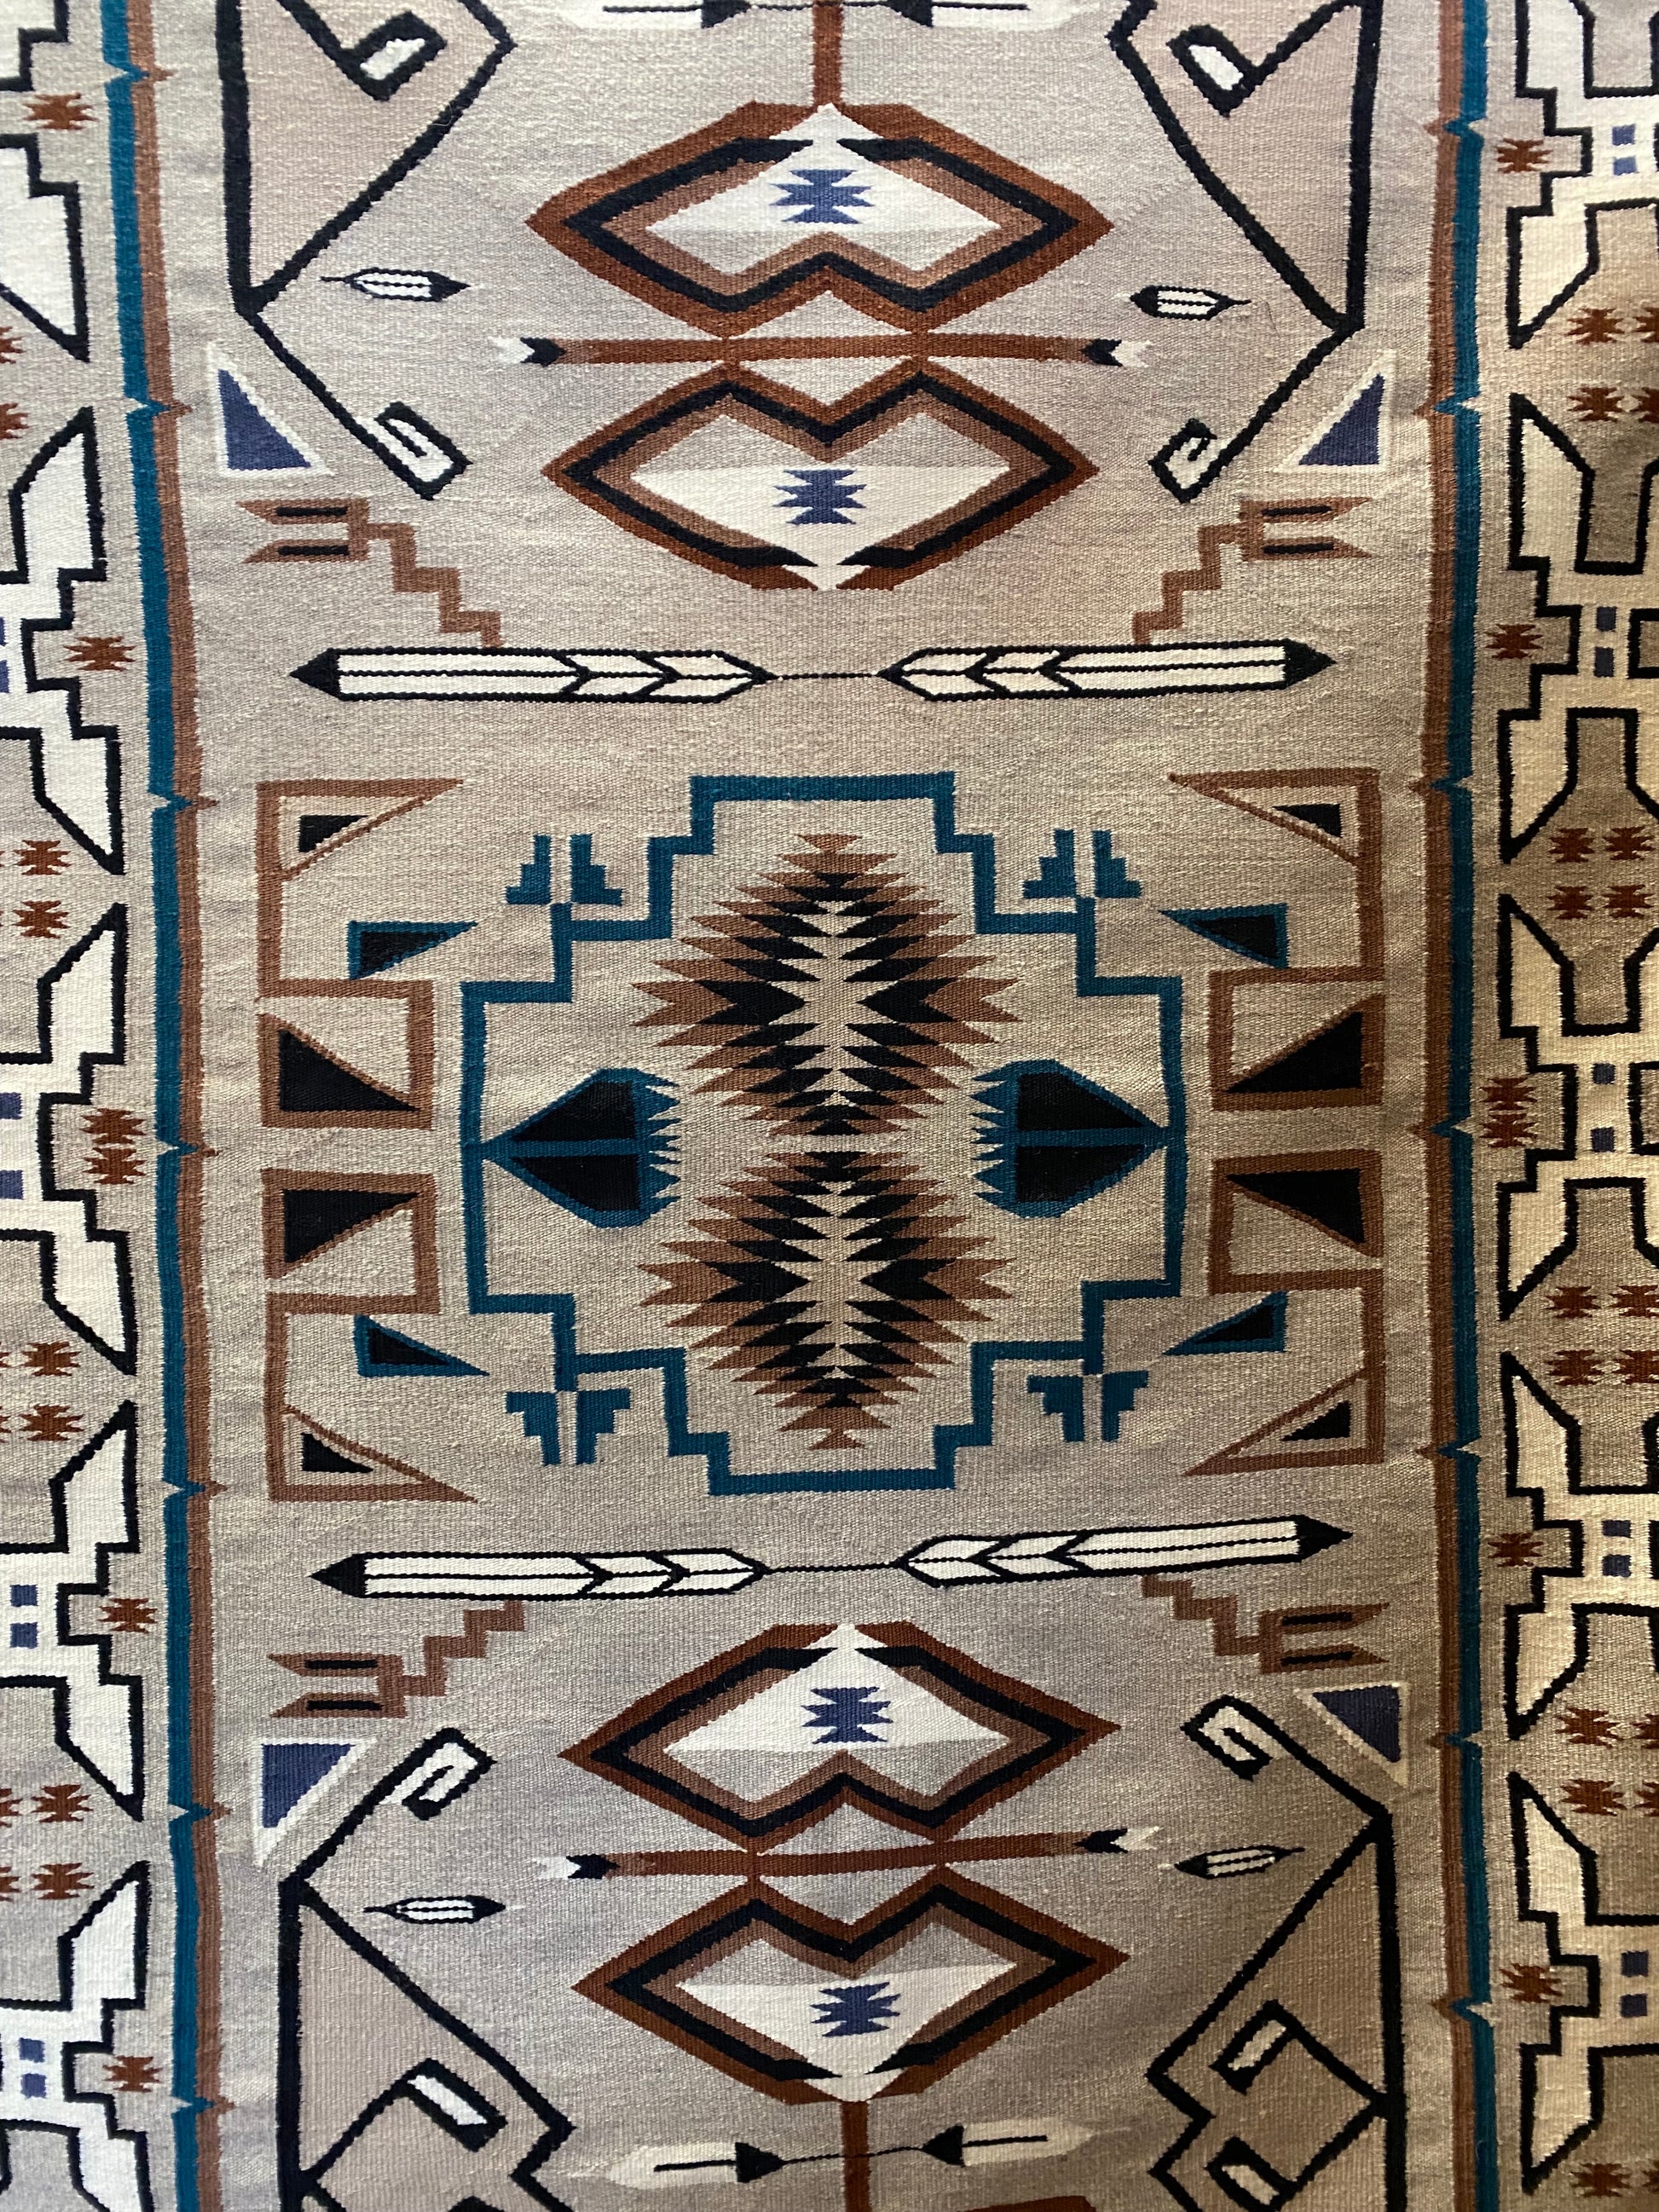 Authentic Navajo, Teec Nos Pos Navajo weaving, navajo rug for sale, telluride furnishings, telluride gallery